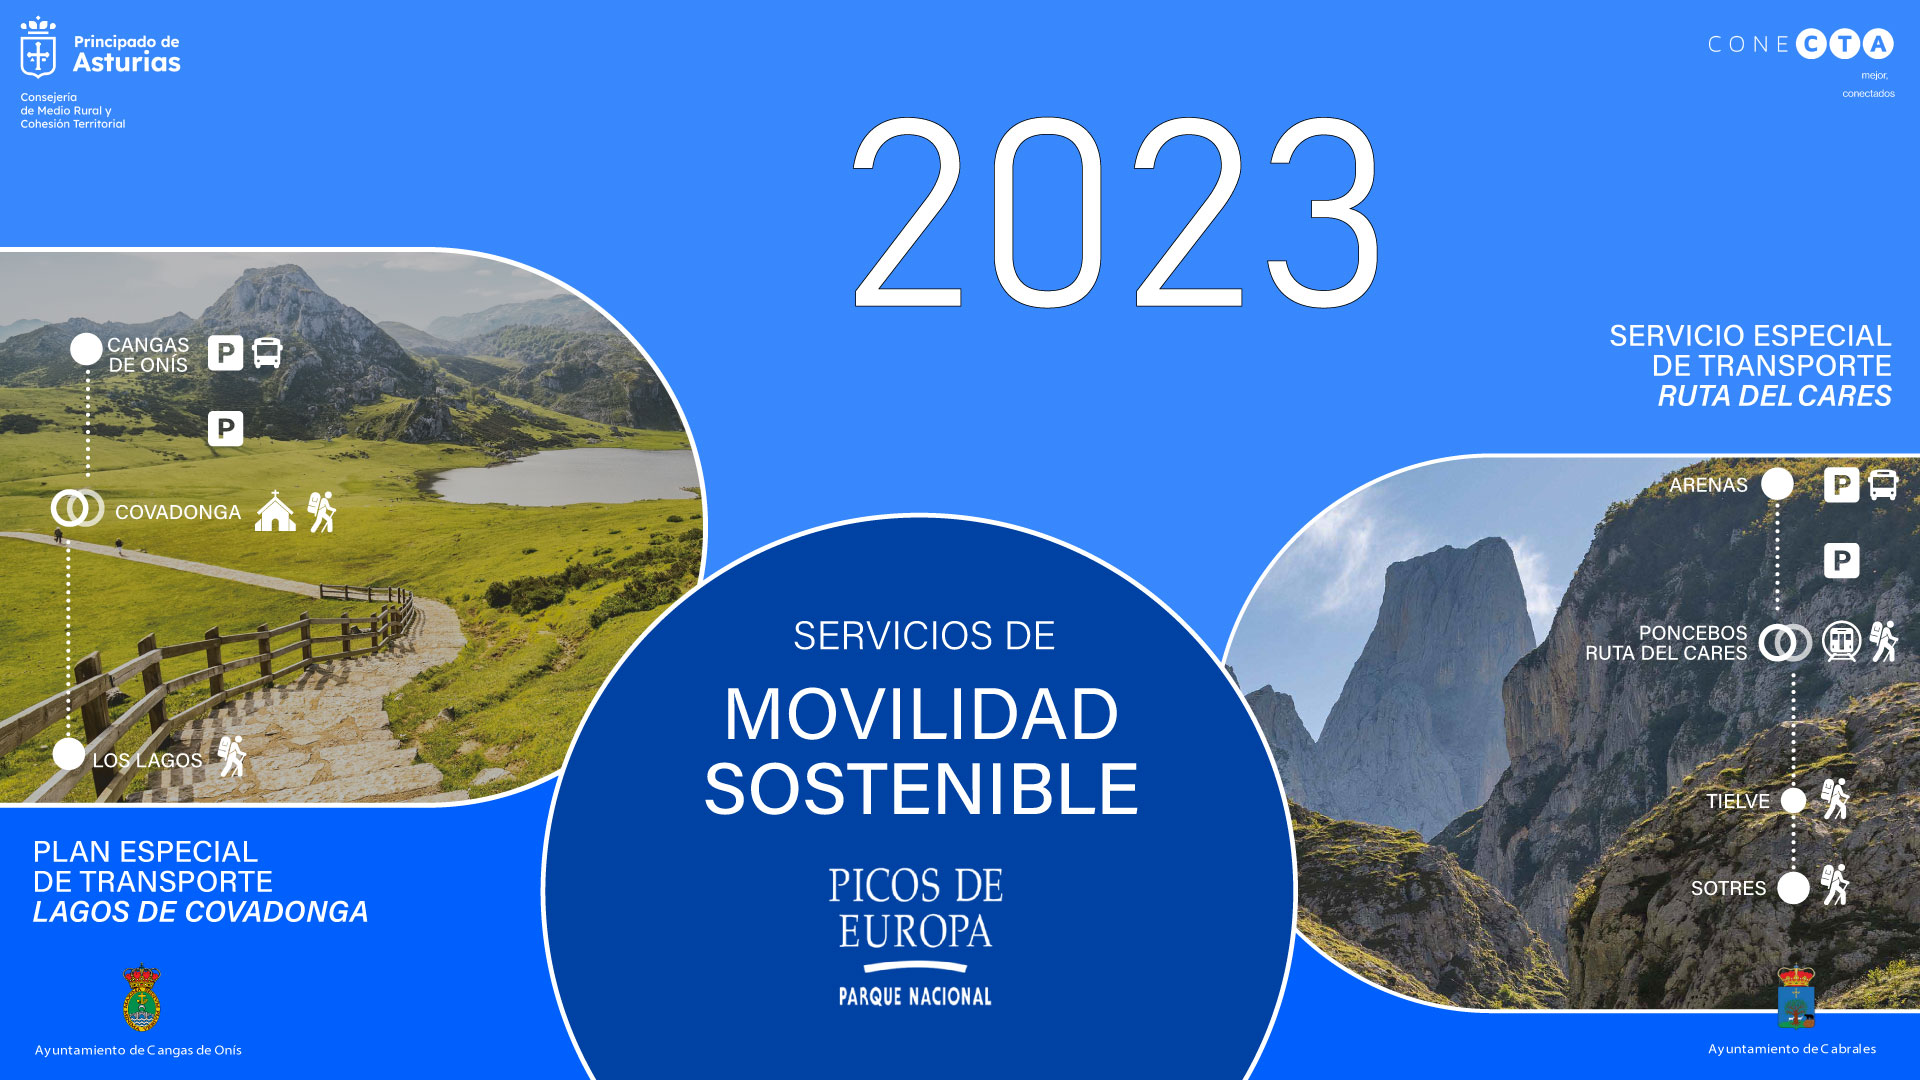 Imagen - El Gobierno de Asturias inicia mañana el Plan especial de transporte a los Lagos 2023, que adelanta media hora el cierre de la carretera a los turismos